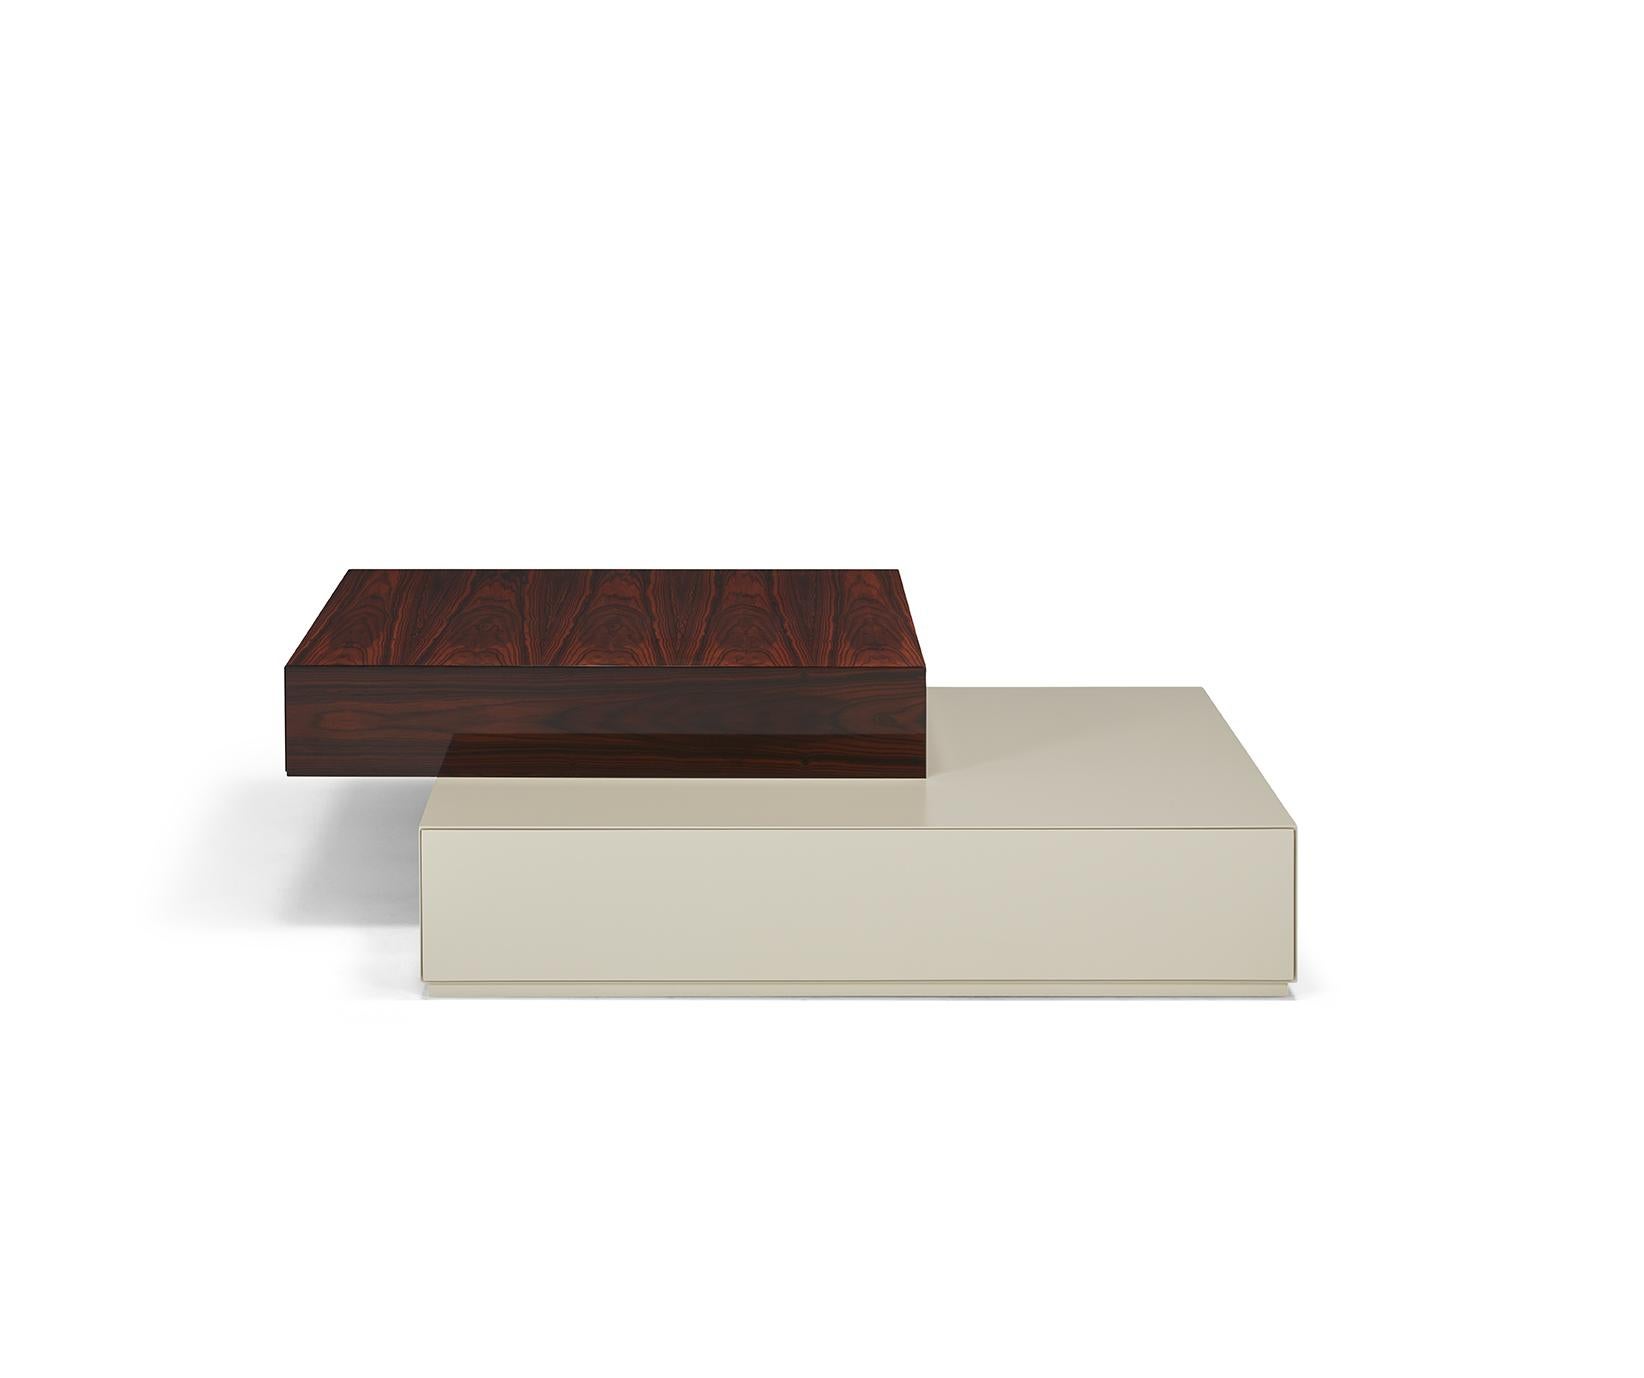 Der Couchtisch Dickens mit zwei sich überlappenden Schubladen ist aus lackiertem und furniertem Holz gefertigt, ermöglicht aber verschiedene Kombinationen von Oberflächen, um sich jedem Designwunsch anzupassen.

Abgebildet in der oberen Schublade